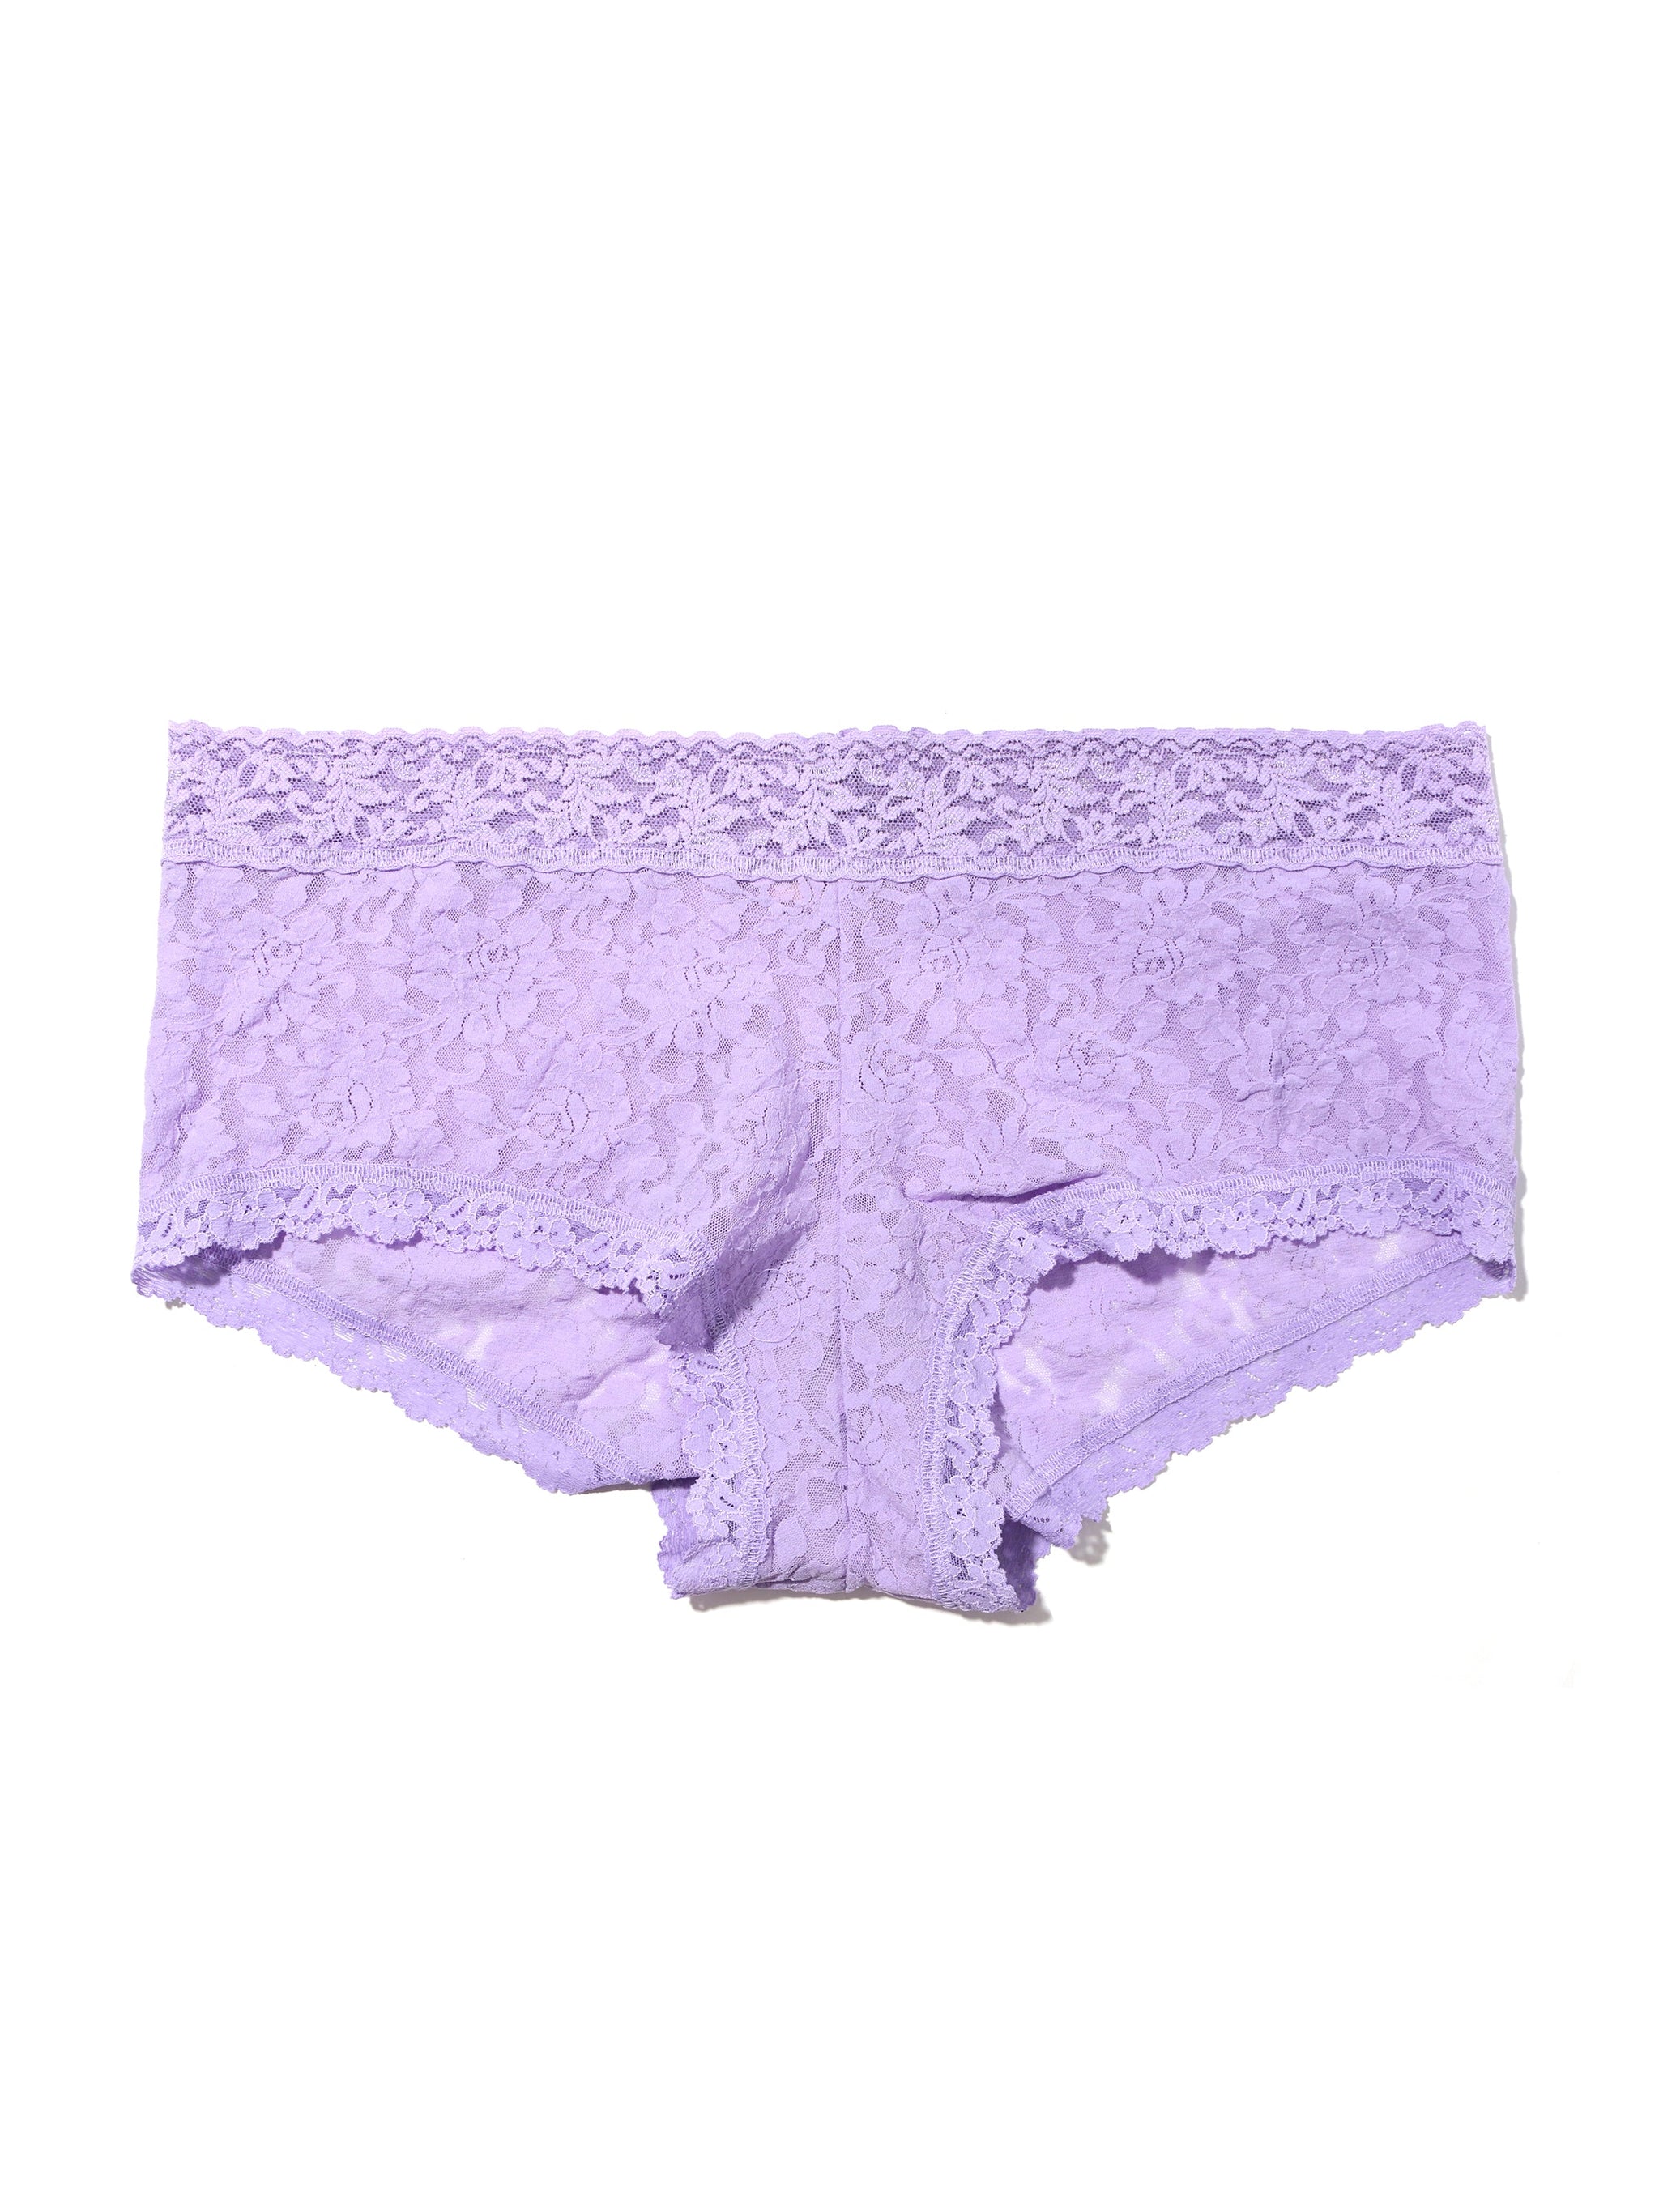 Plus Size Signature Lace Boyshort Wisteria Purple Sale